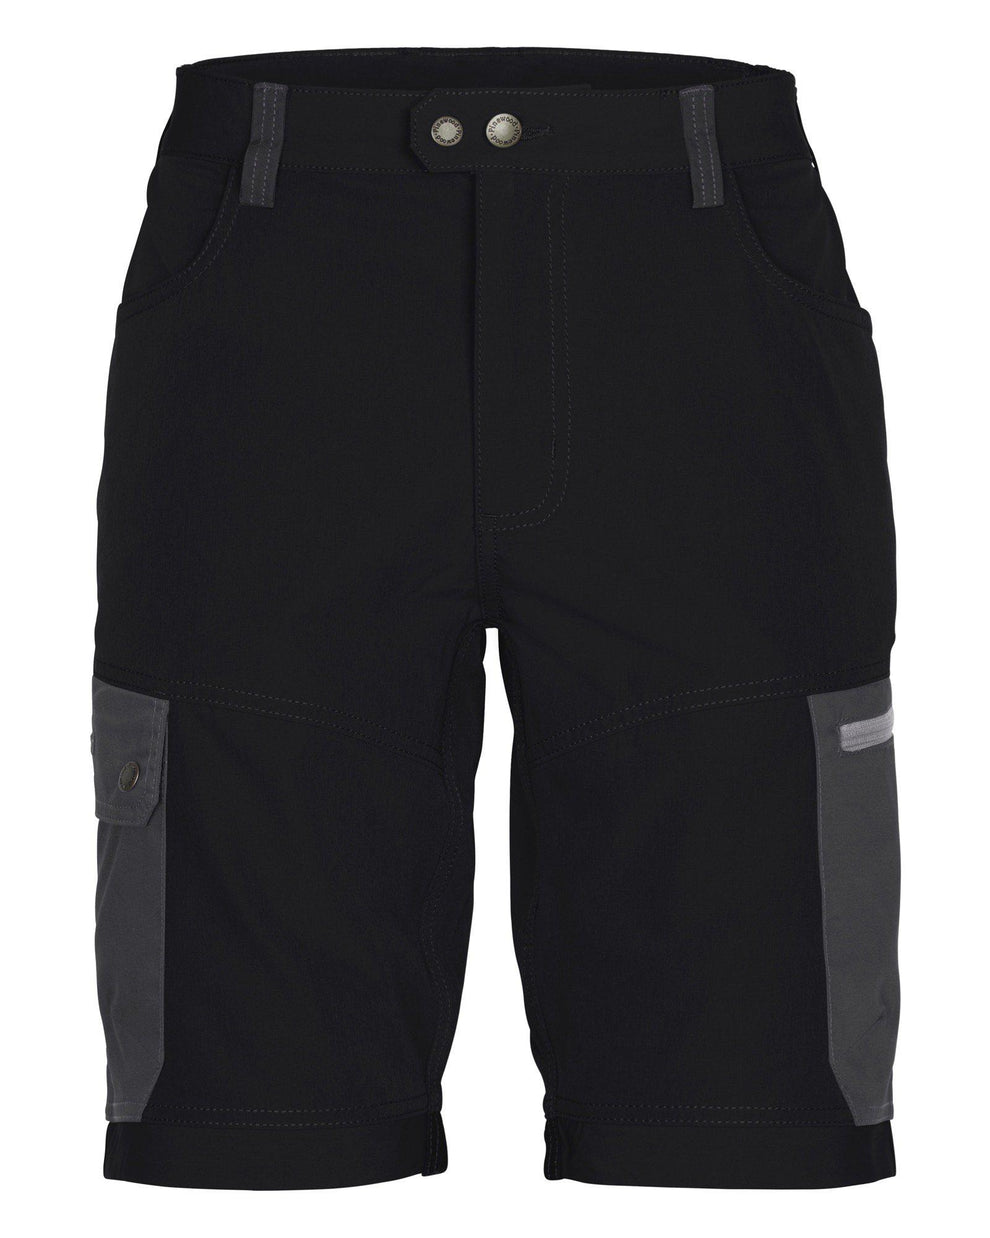 5316-407-01_Finnveden-Trail-Hybrid-Shorts-Mens_Black-Dark-Anthracite